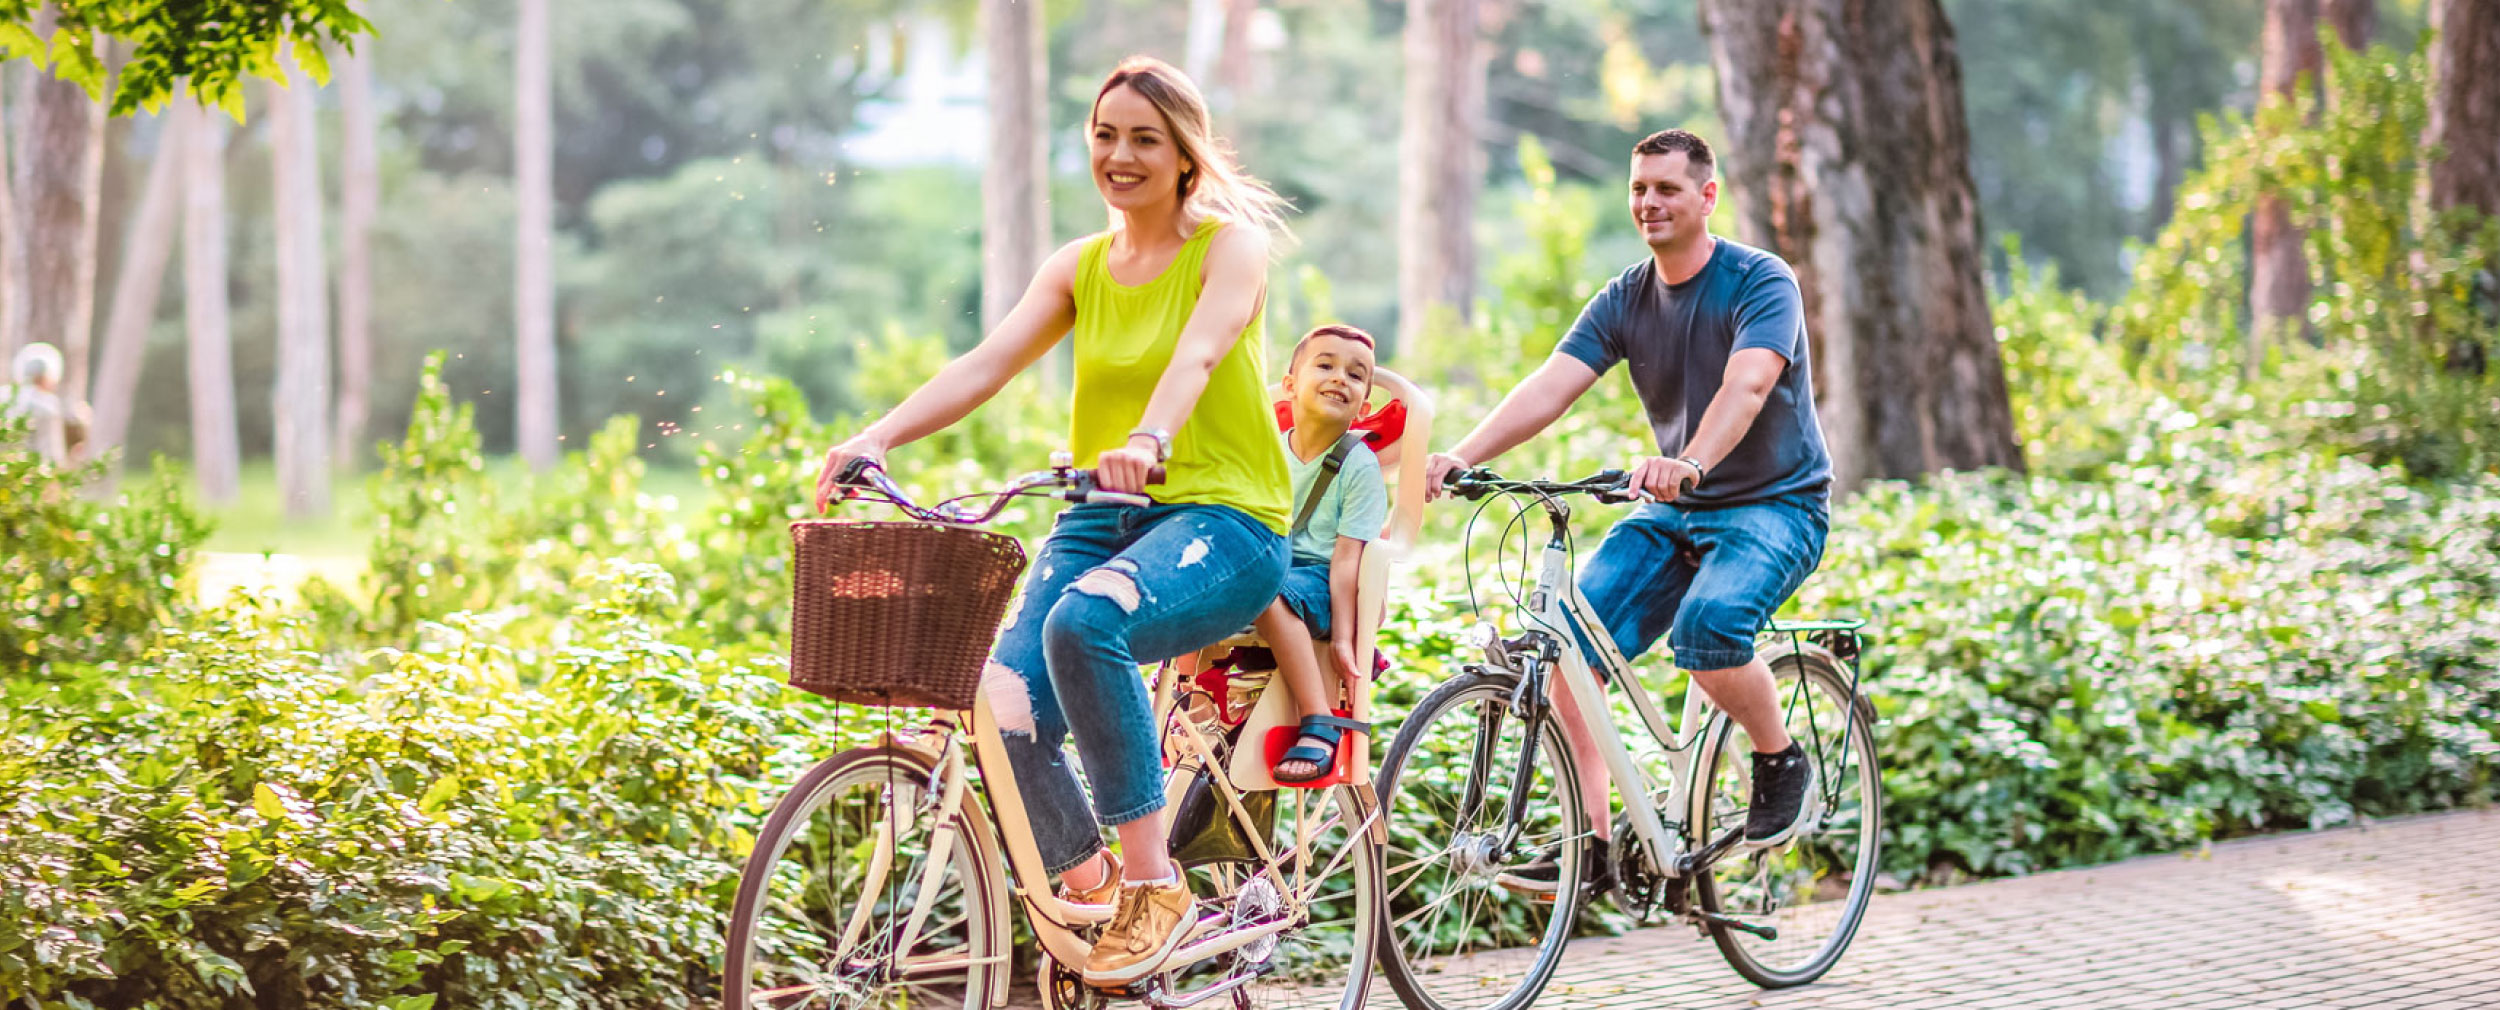 Family Riding Bikes Outdoors